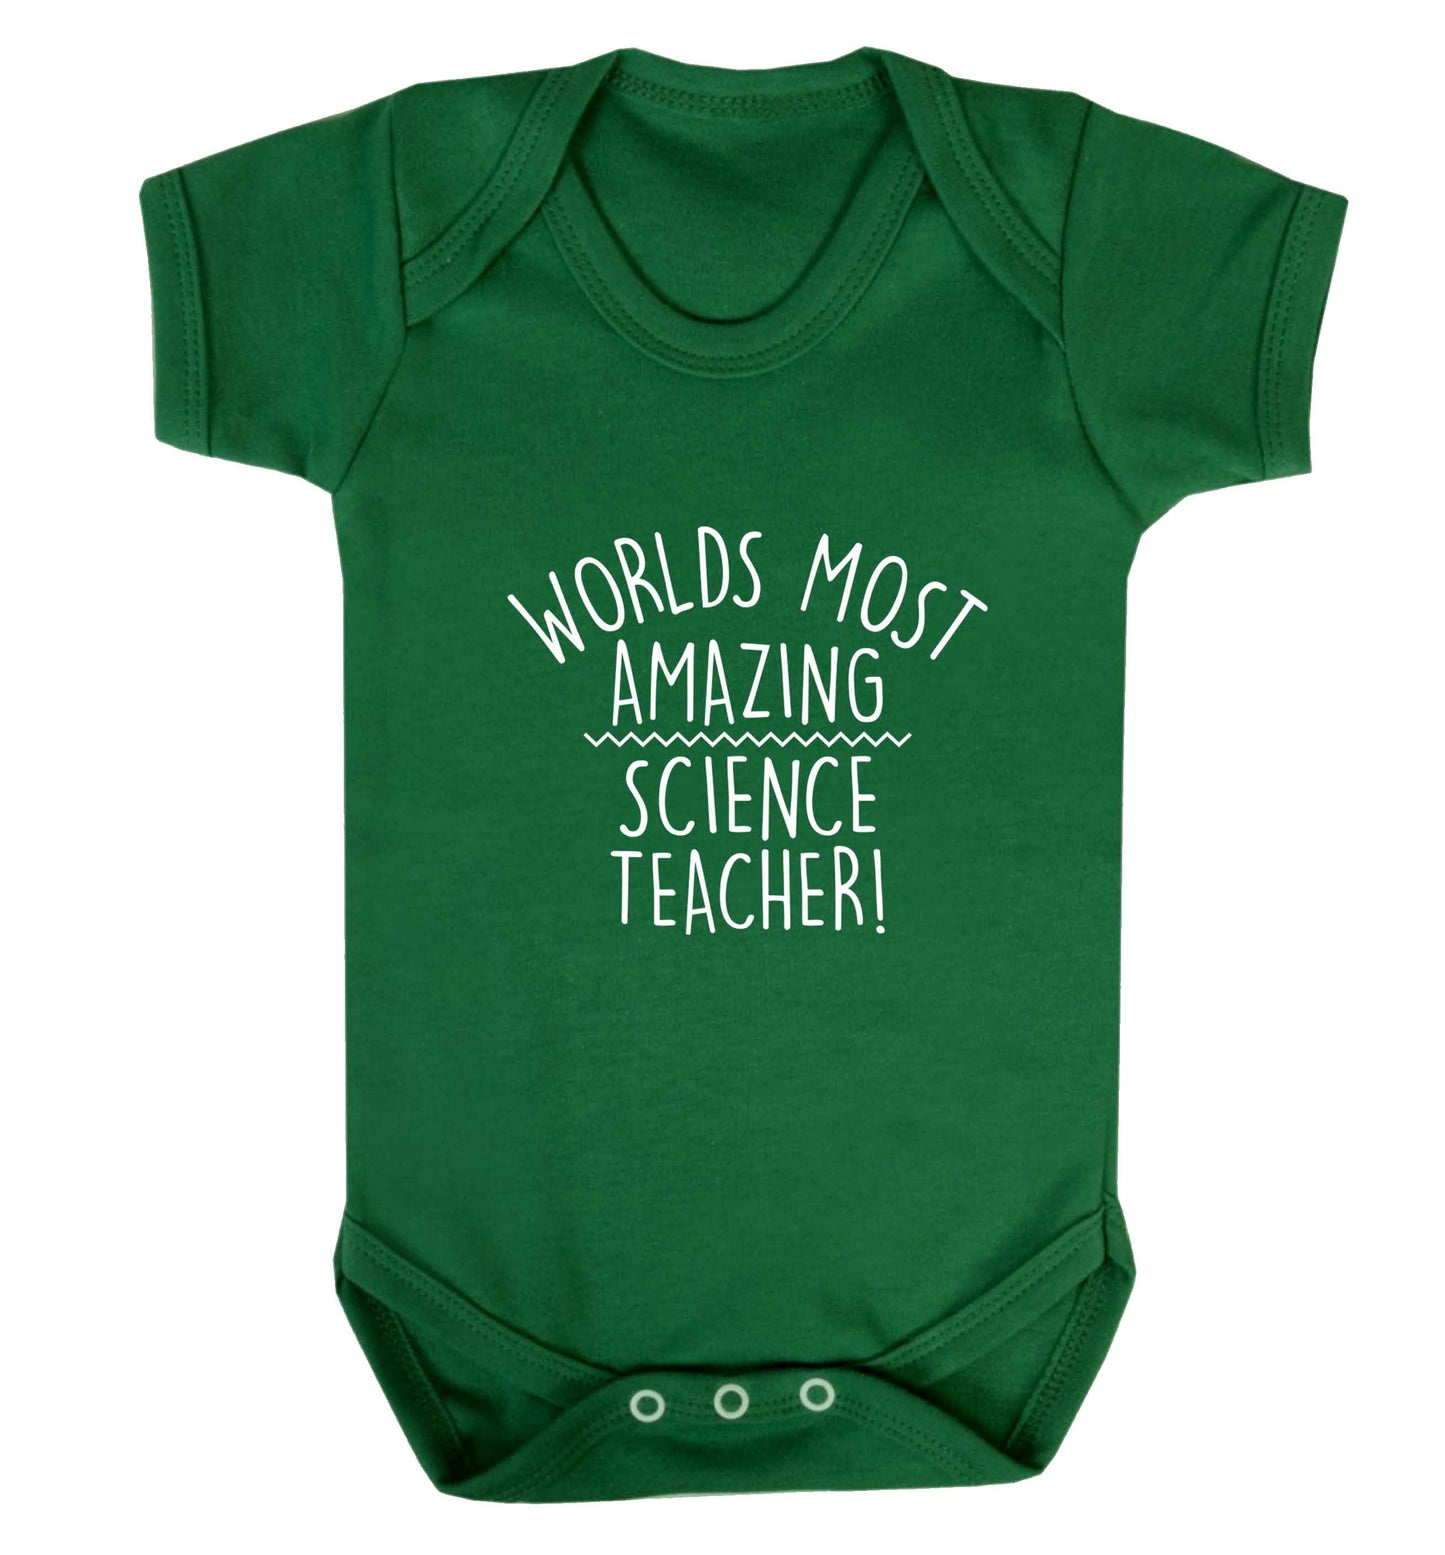 Worlds most amazing science teacher baby vest green 18-24 months